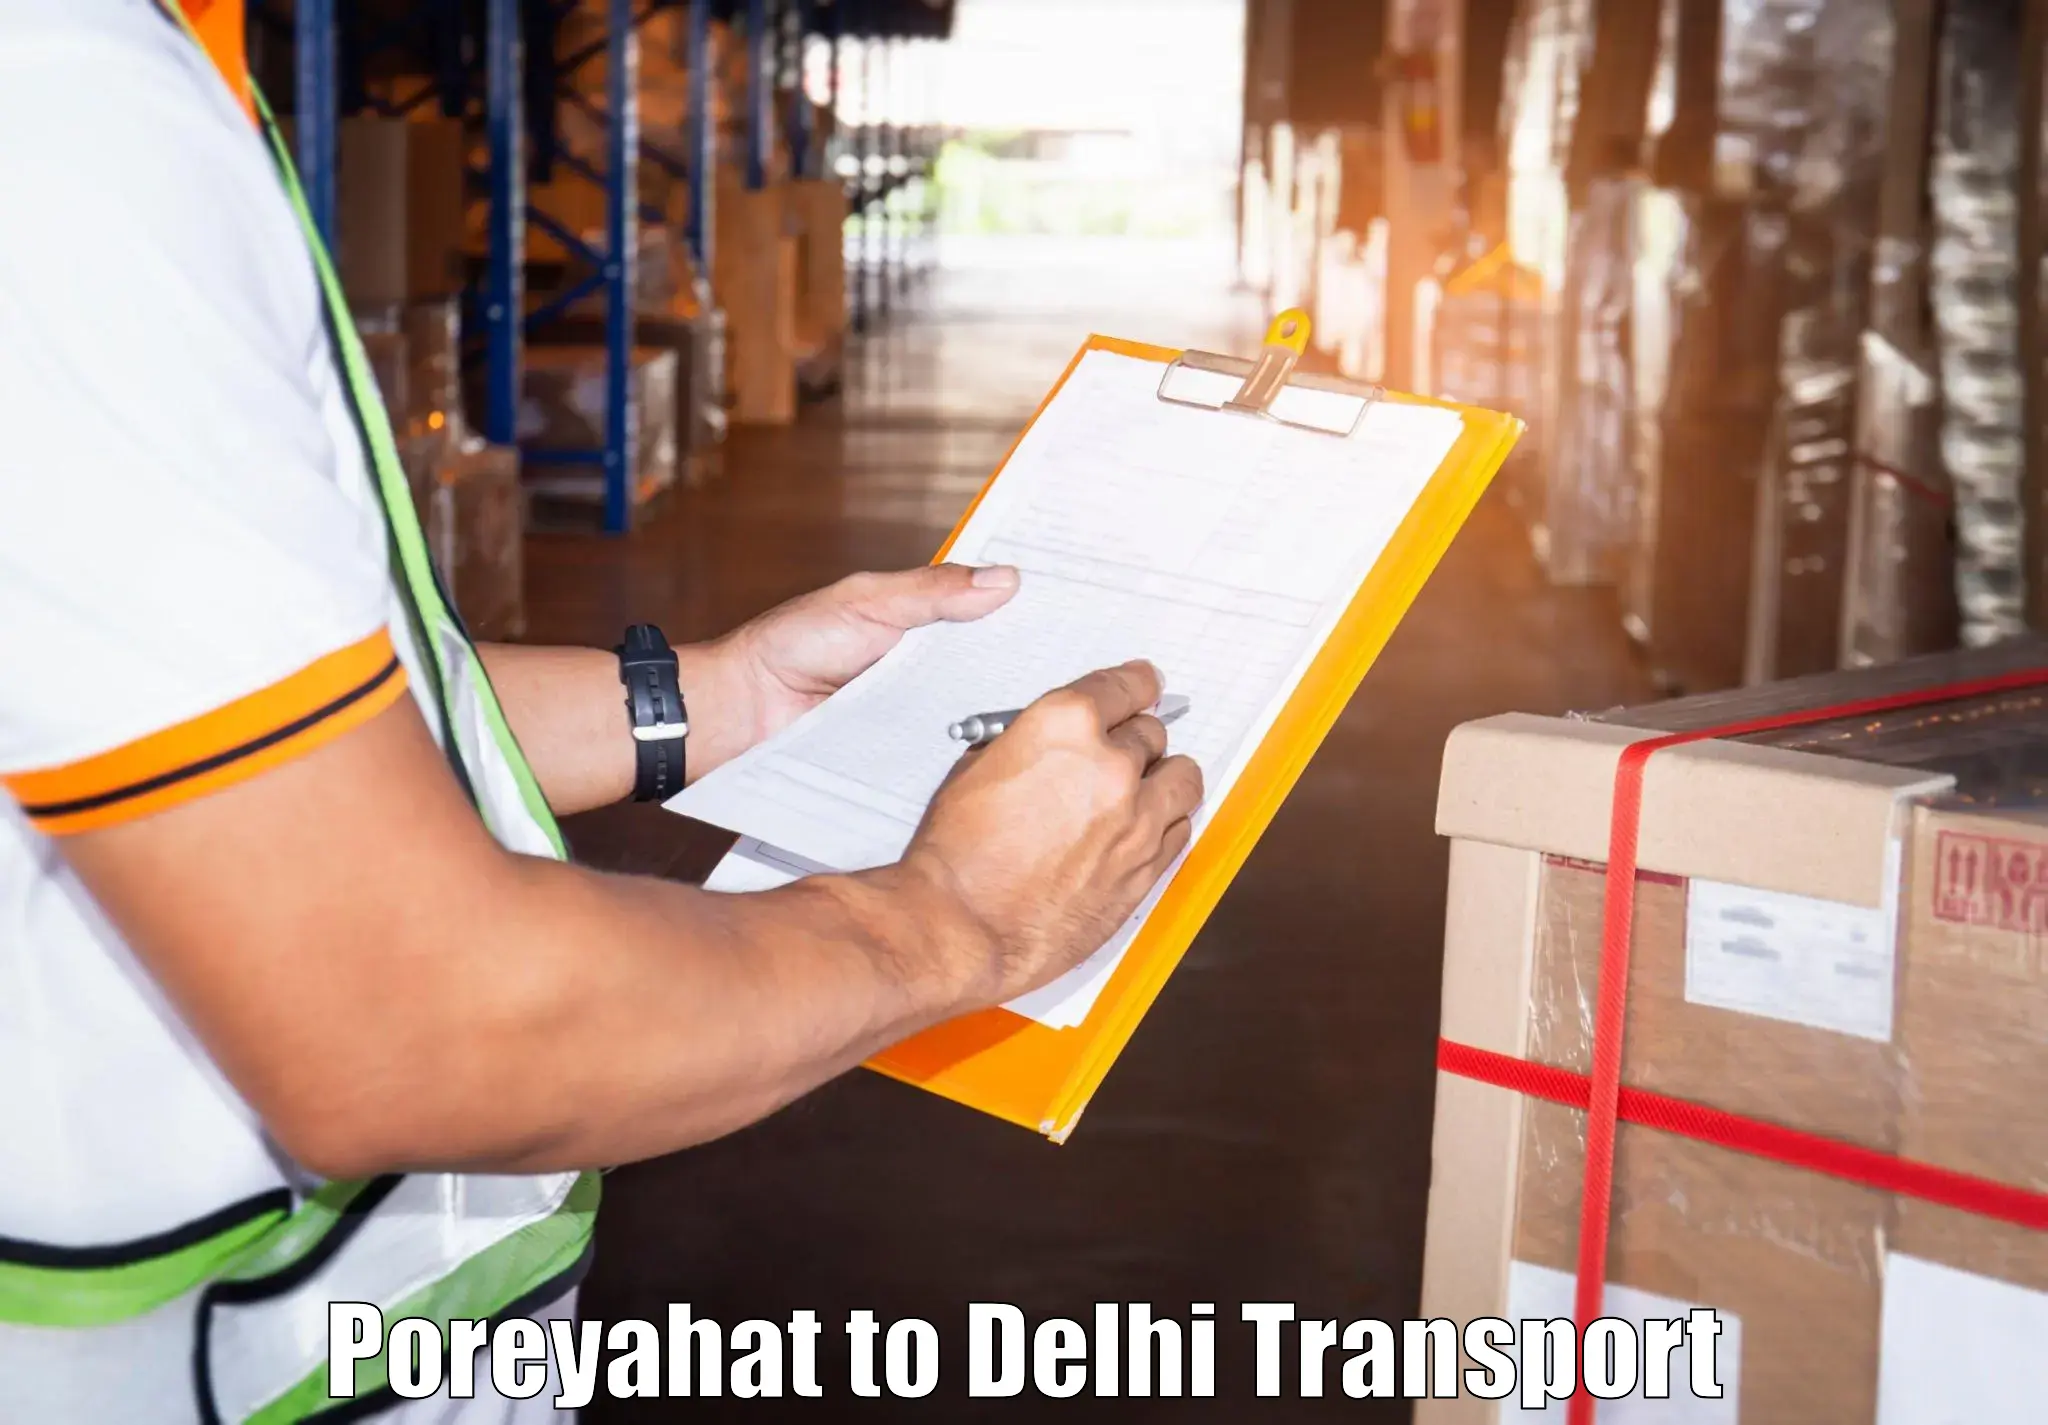 Container transport service Poreyahat to Sarojini Nagar